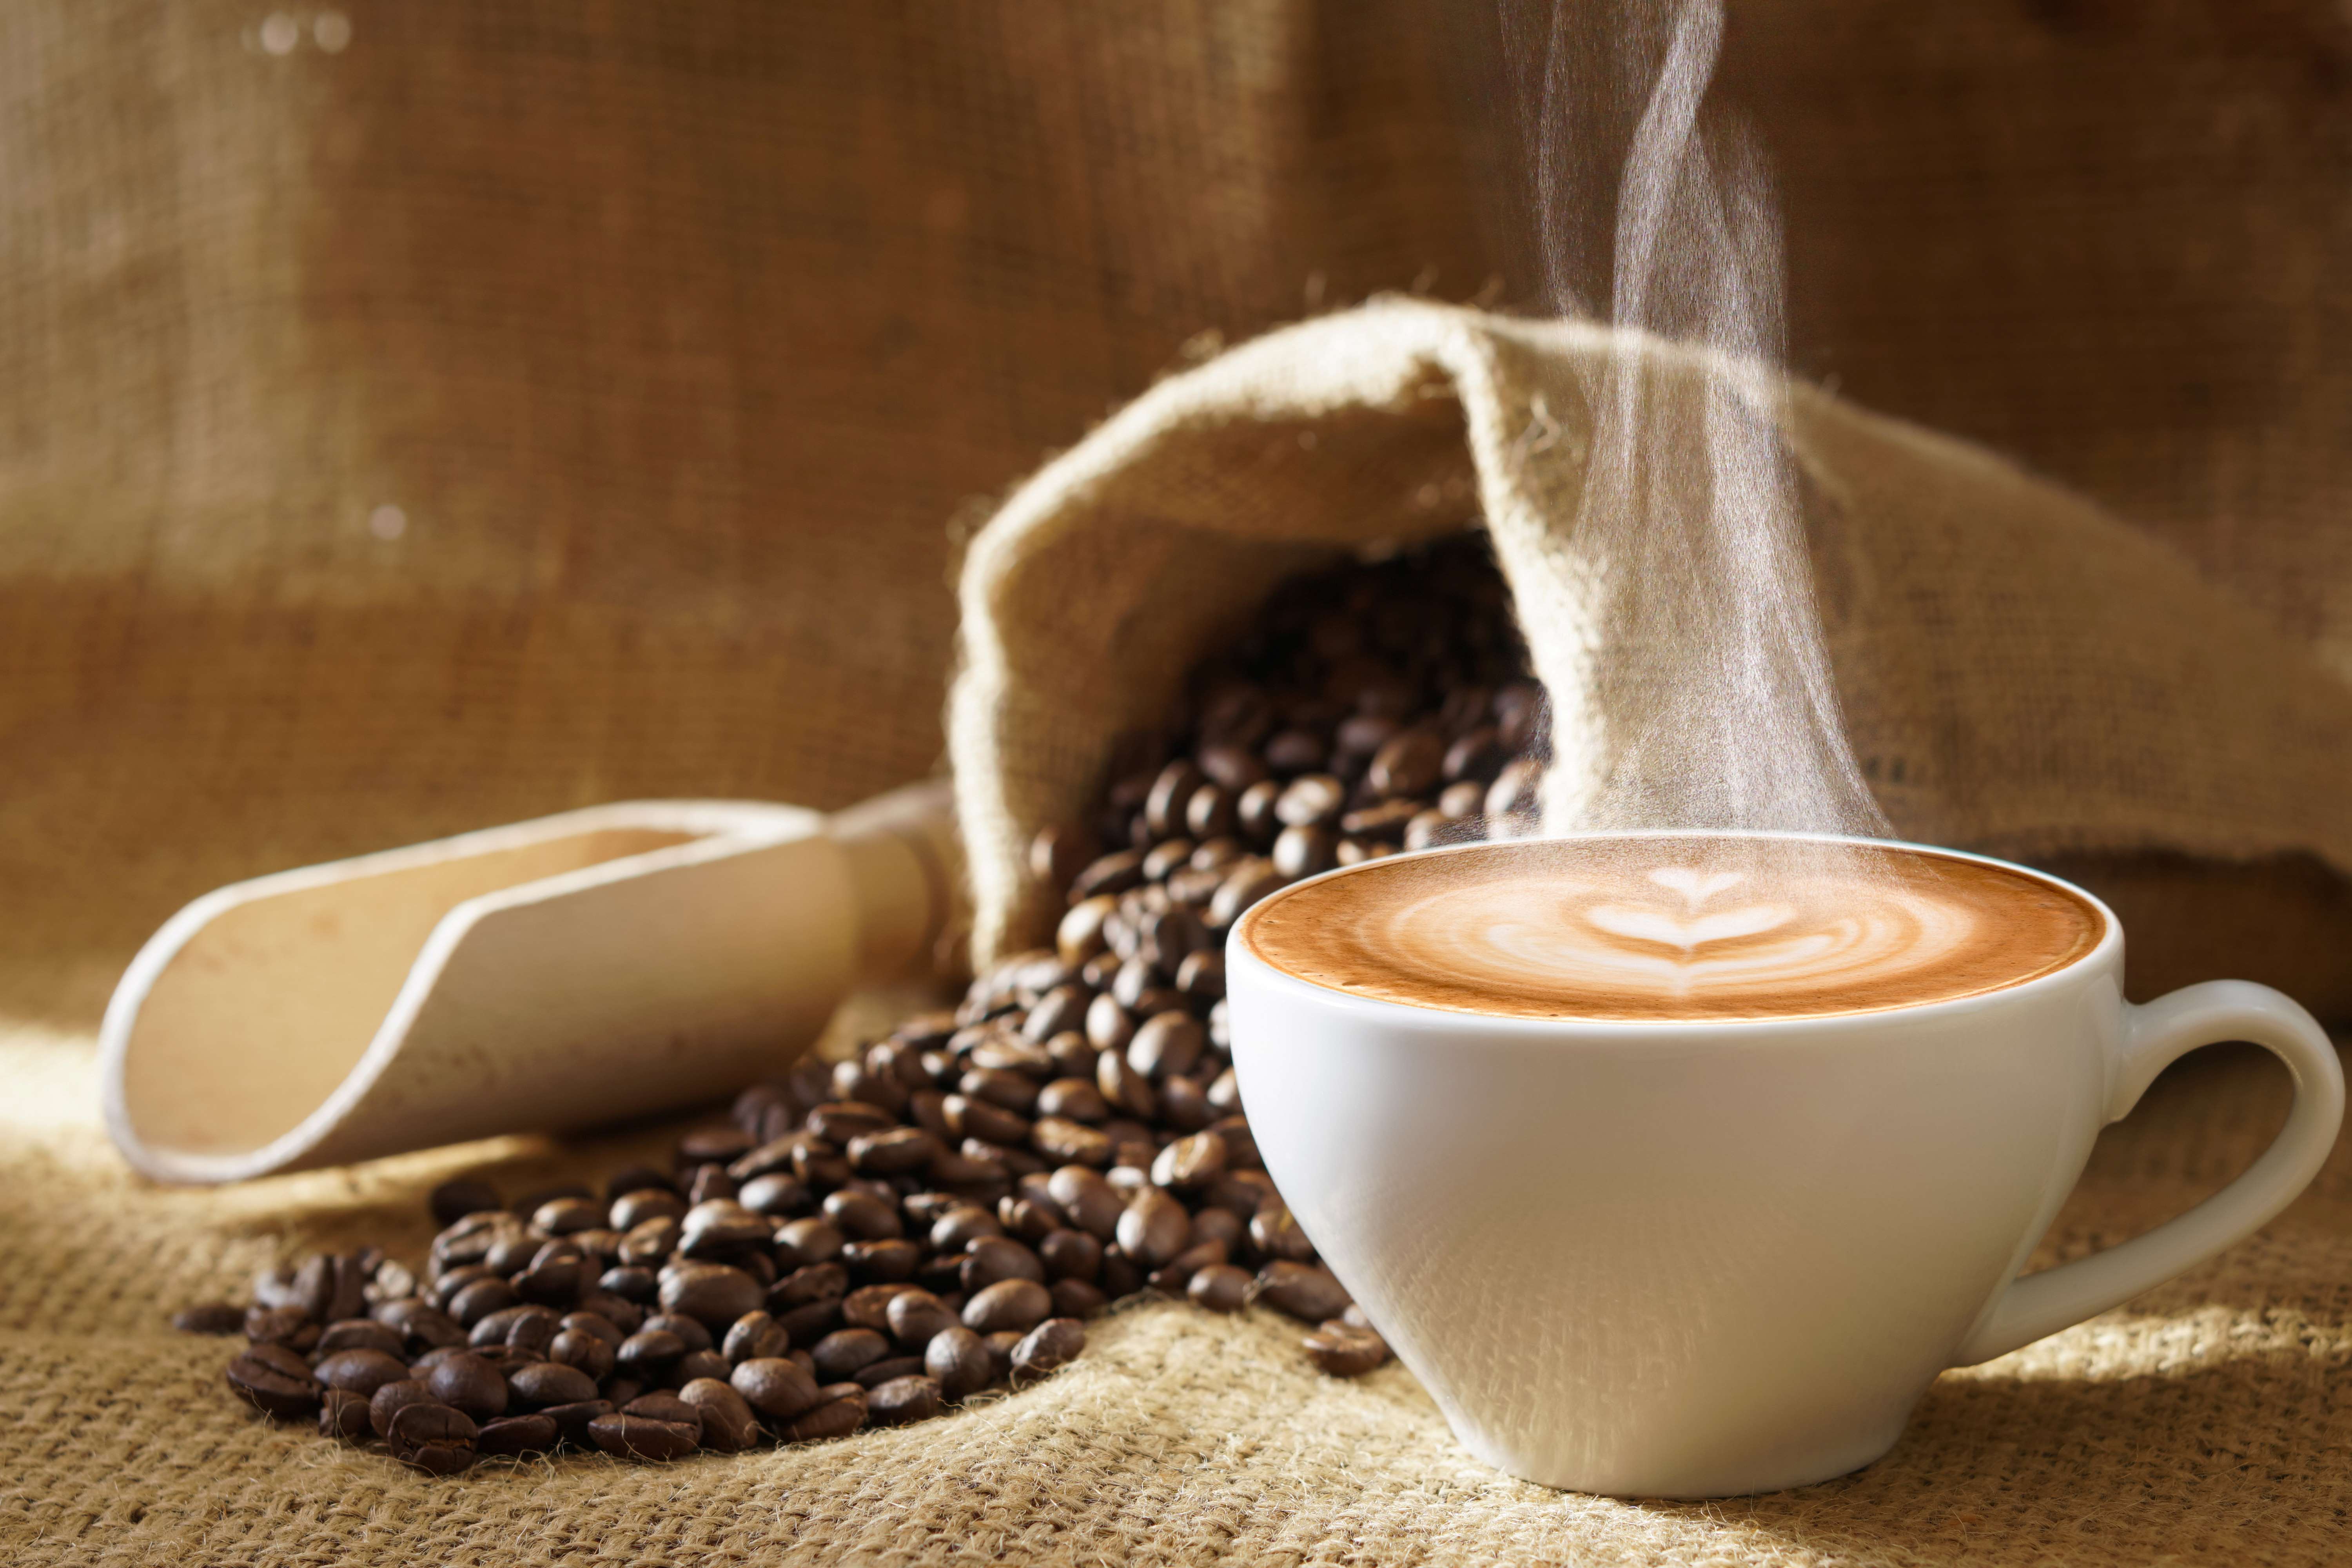 5 sterke vragen over koffie en Rabo Smart Pay